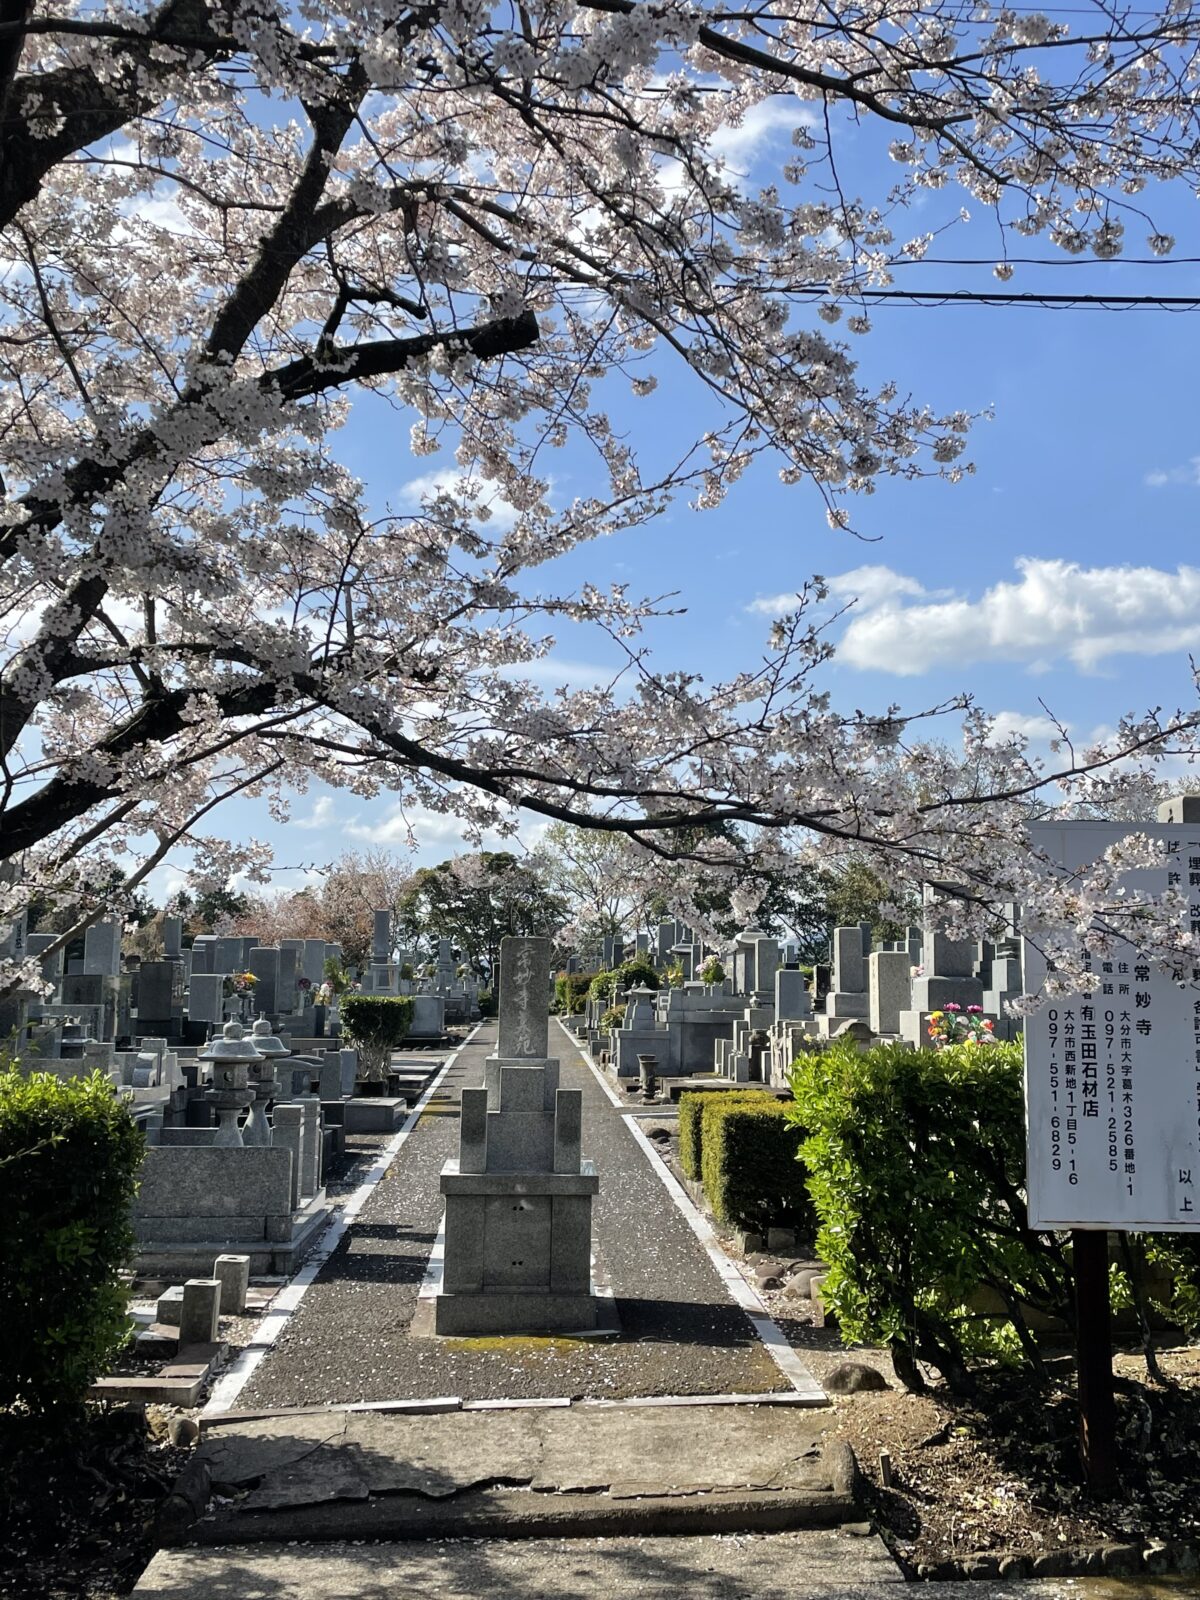 こちらは、常妙寺上野墓苑の桜。昔からの大分市の桜の名所の一つです。